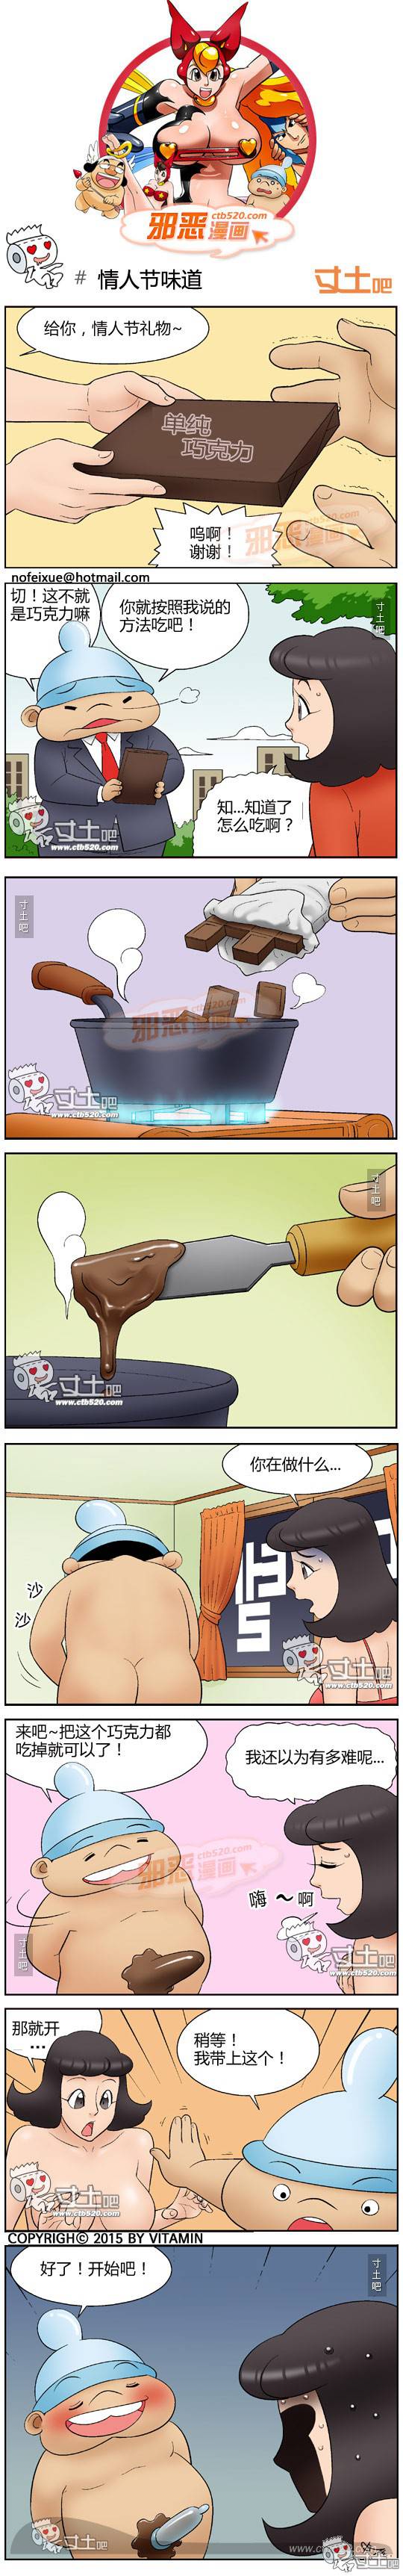 邪恶漫画爆笑囧图第307刊：搬家打蛋糕